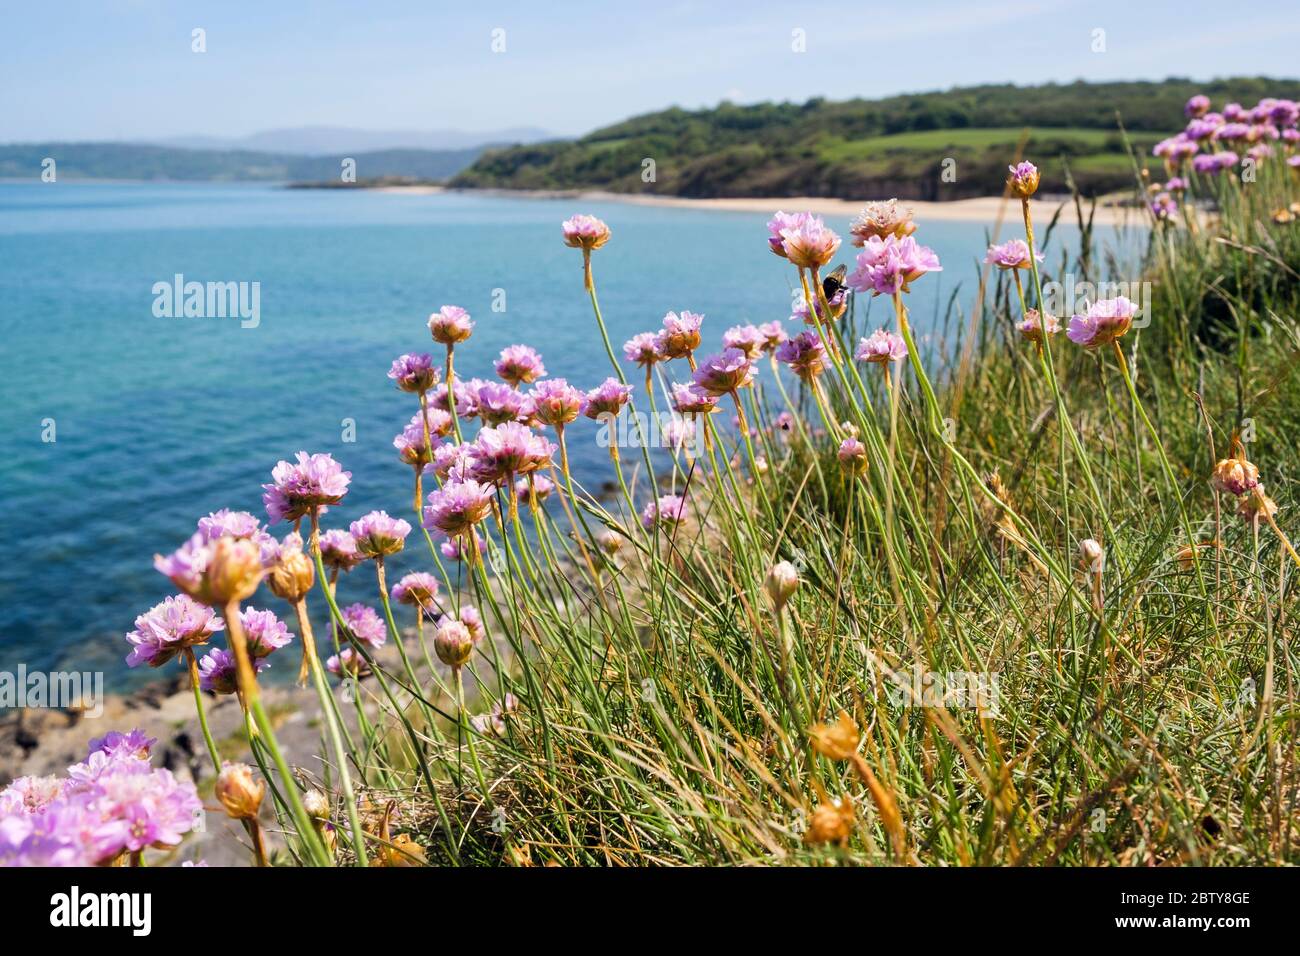 Fleurs de rose de mer ou de Thrift (Armeria maritima) qui poussent sur la côte au-dessus de la baie au début de l'été. Benllech, Île d'Anglesey, pays de Galles du Nord, Royaume-Uni, Grande-Bretagne Banque D'Images